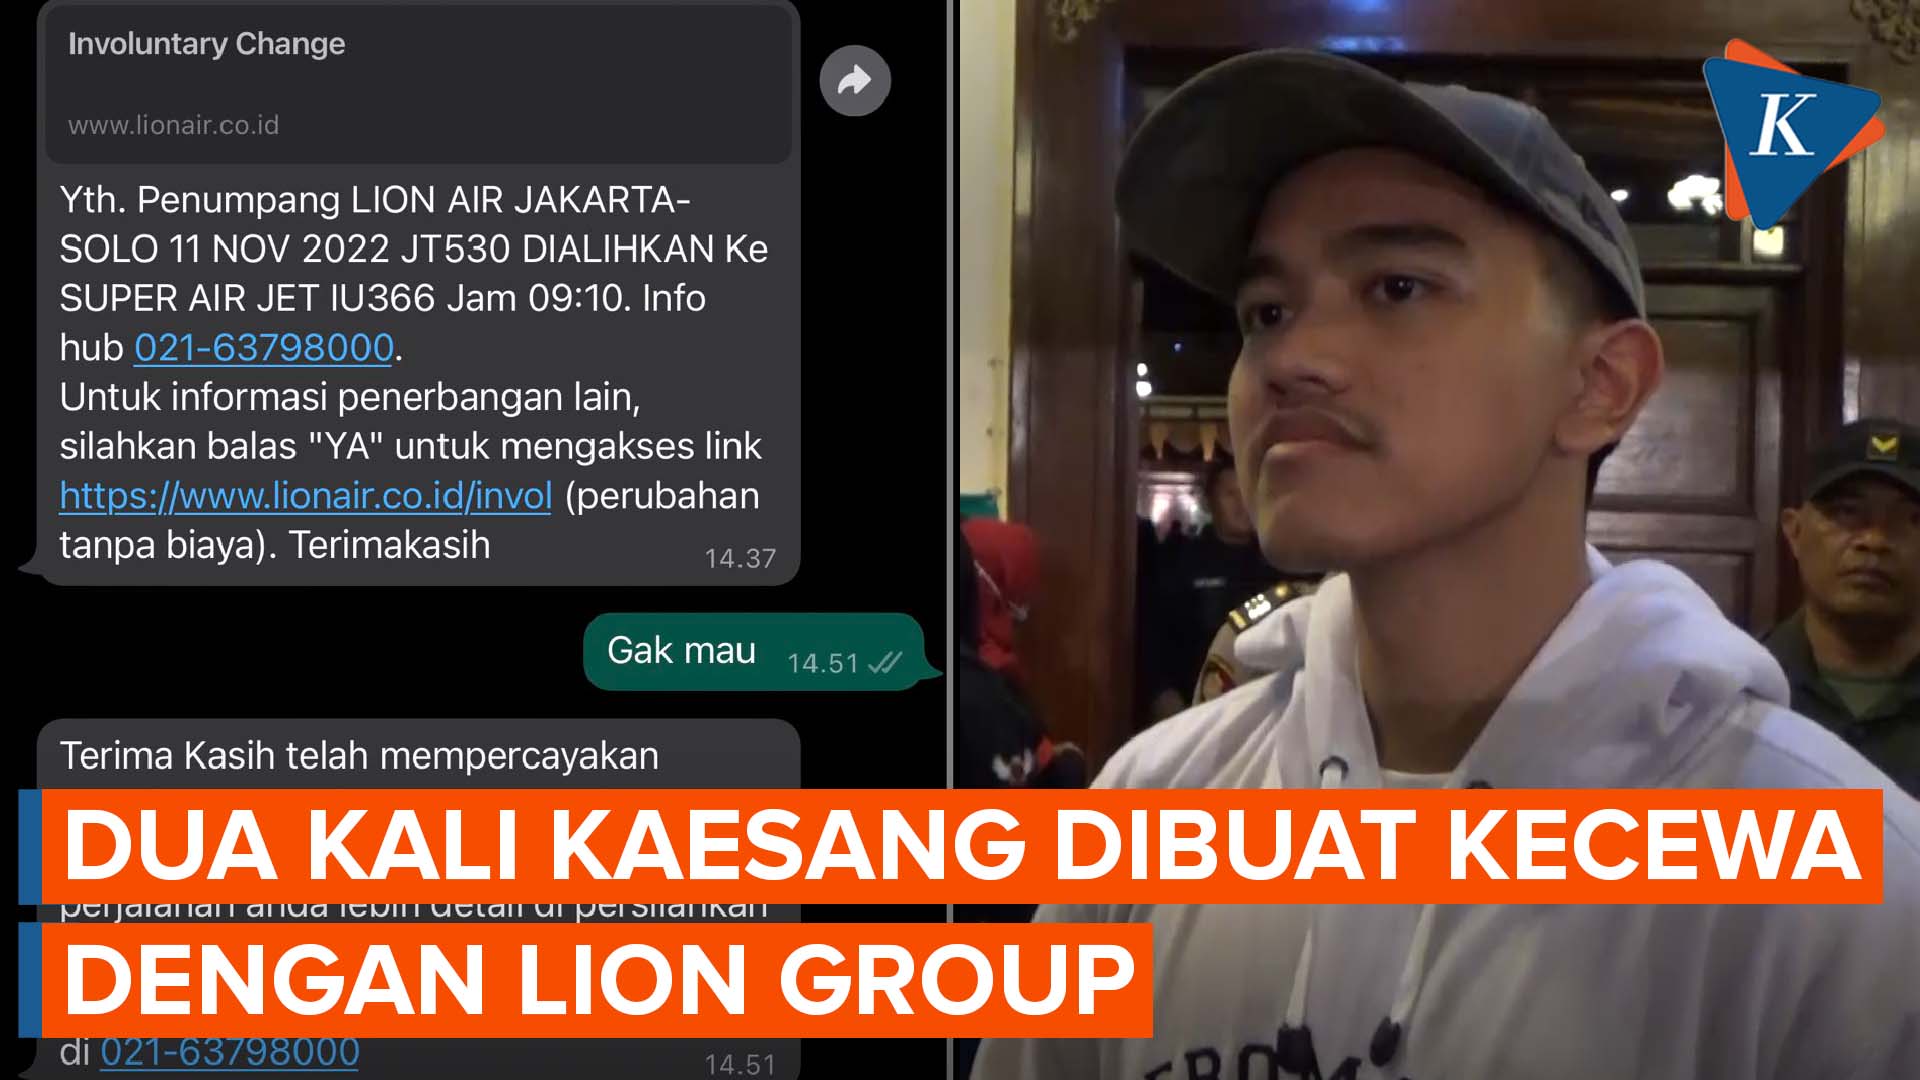 Setelah Koper Nyasar, Kini Kaesang Gagal Kondangan gegara Lion Air